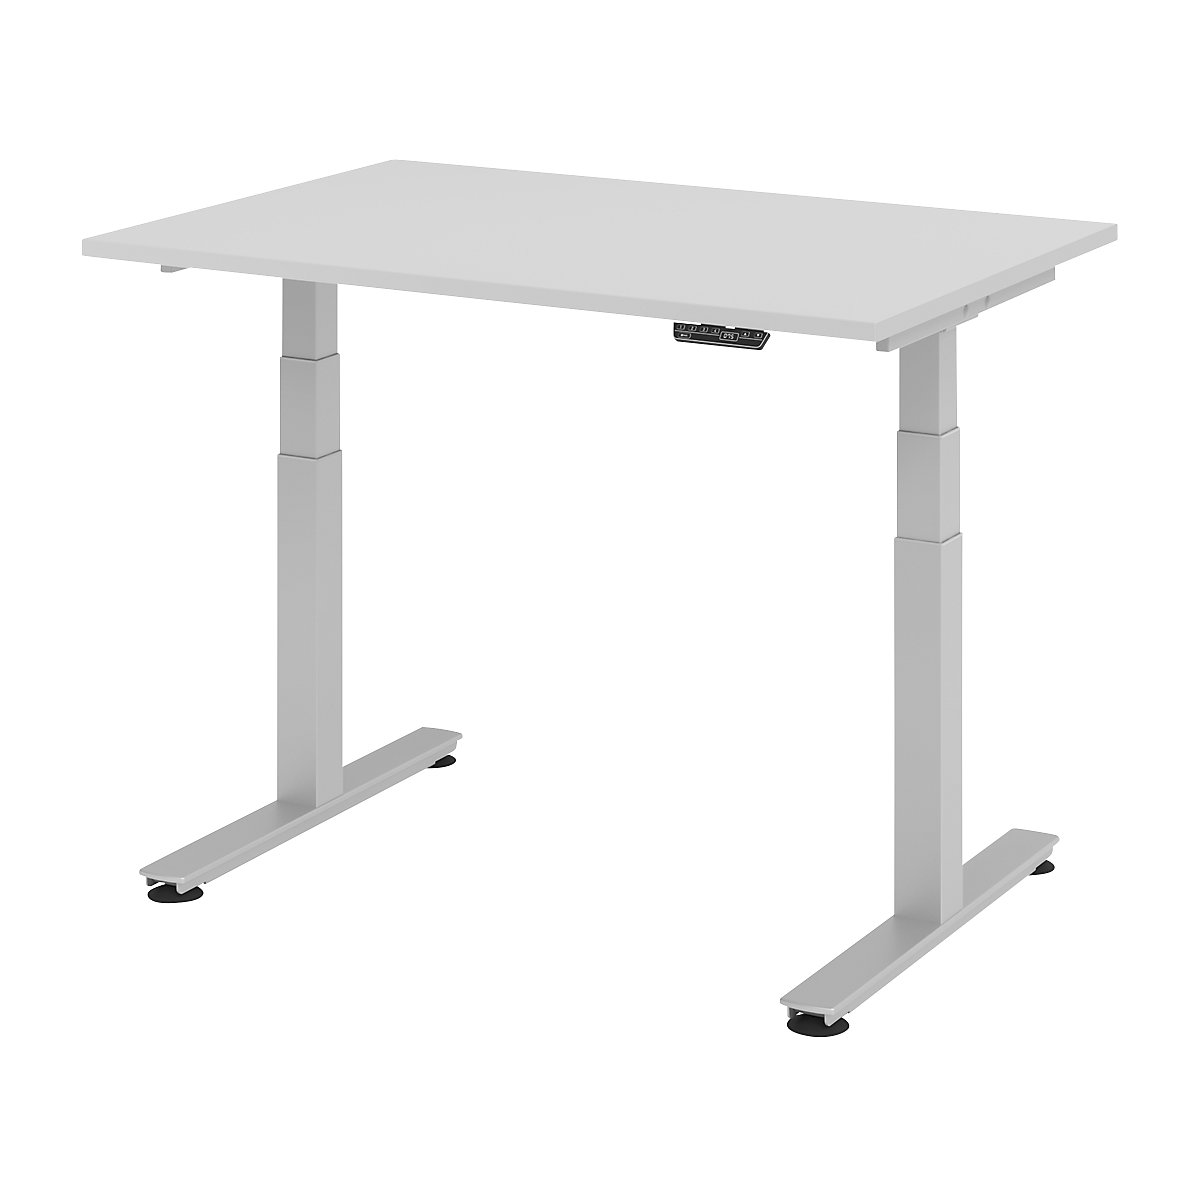 Psací stůl pro práci vestoje, s elektrickým přestavováním výšky UPLINER-2.0, podstavec s nohami ve tvaru T, šířka 1200 mm, světle šedá-19